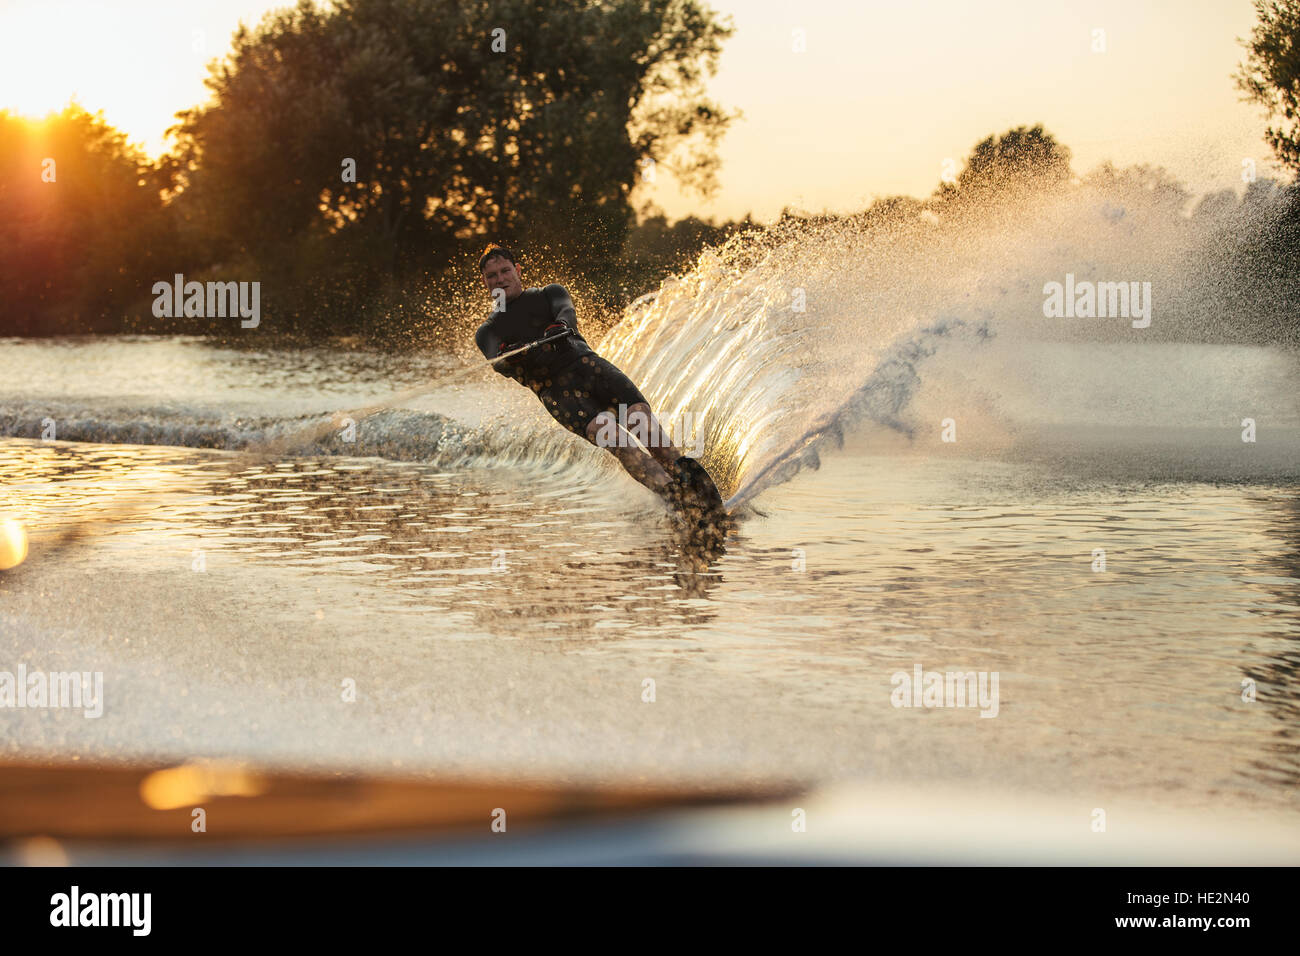 Man riding planche dans un lac. La skieuse de l'eau en action sur le lac. Banque D'Images